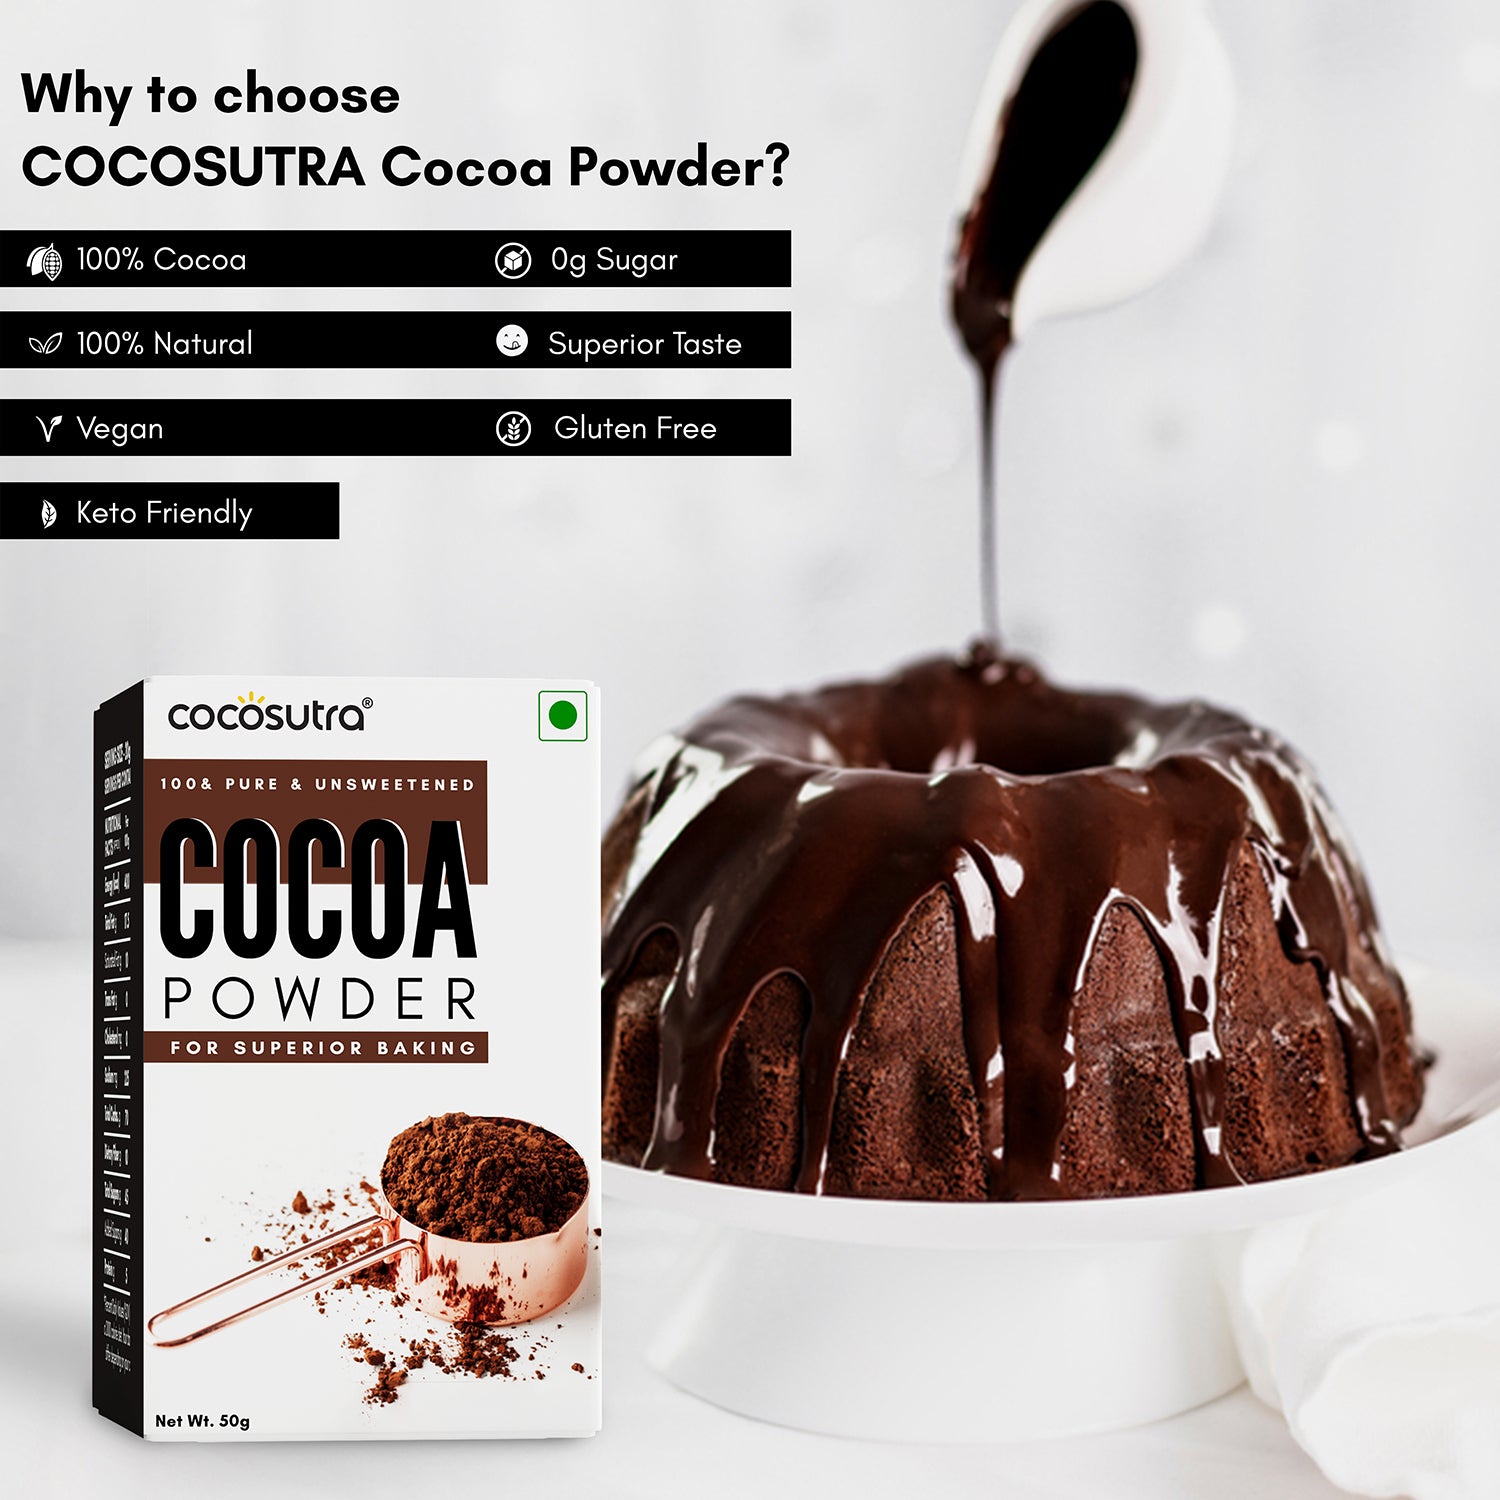 Cocosuta - Cocoa Powder - Elevate Your Baking